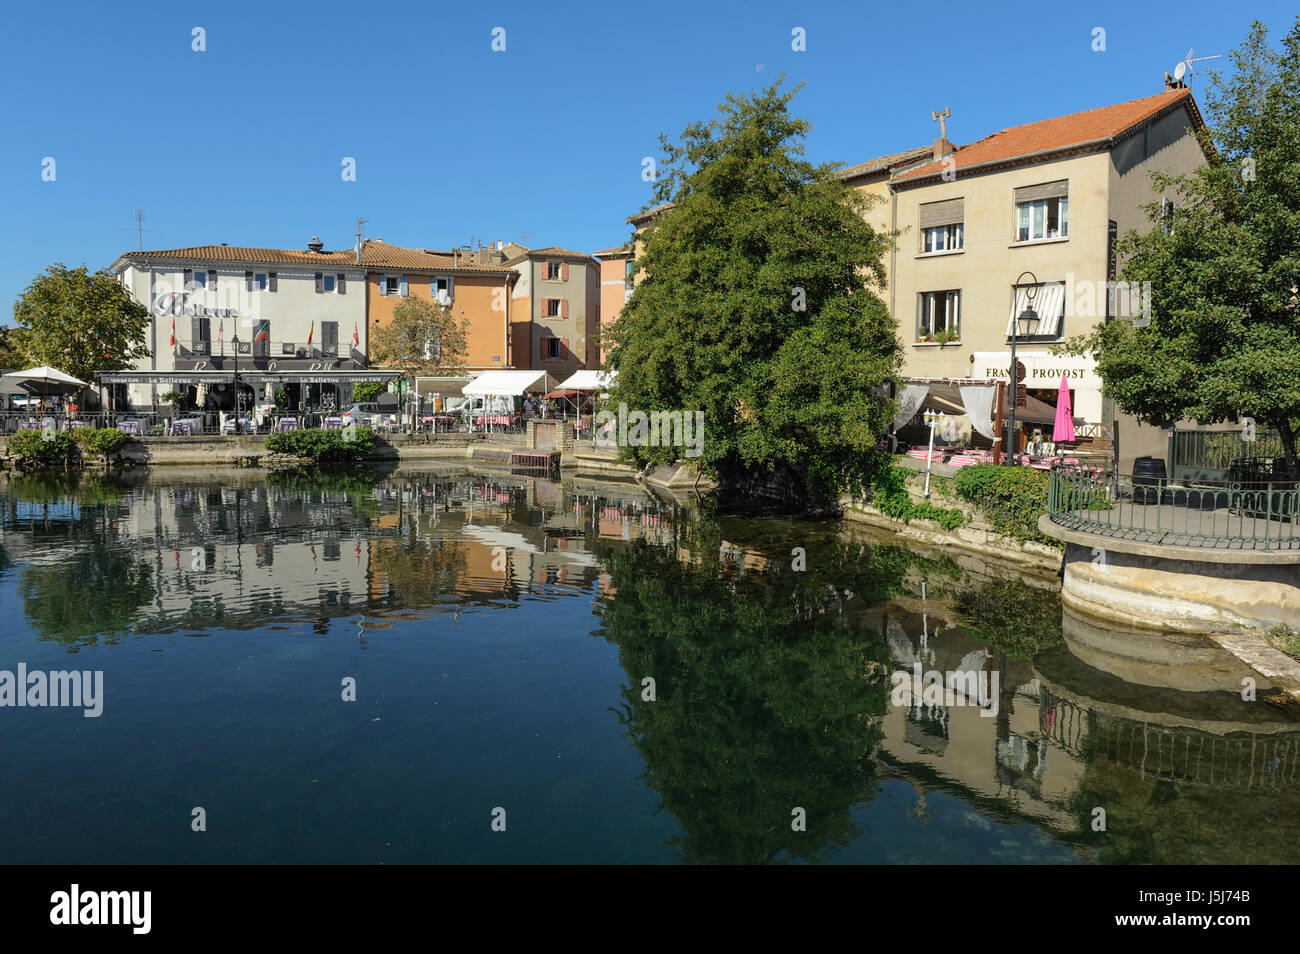 Maisons au bord de la rivière, des restaurants et bars, L'Isle-sur-la-Sorgue, France Banque D'Images